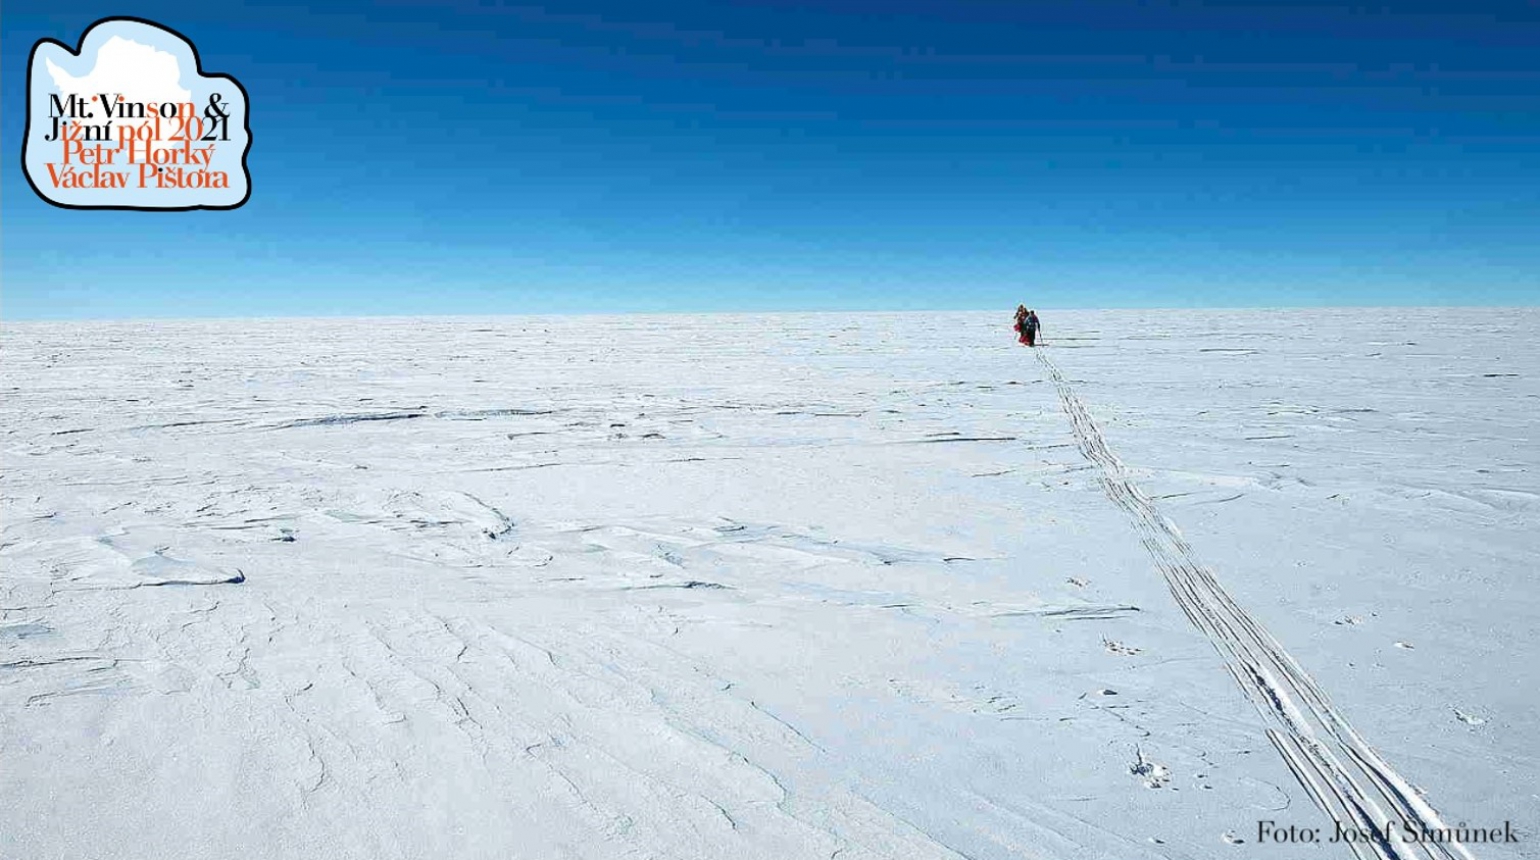 Mise splněna! Petr Horký po zdolání Mount Vinson stanul i na jižním pólu